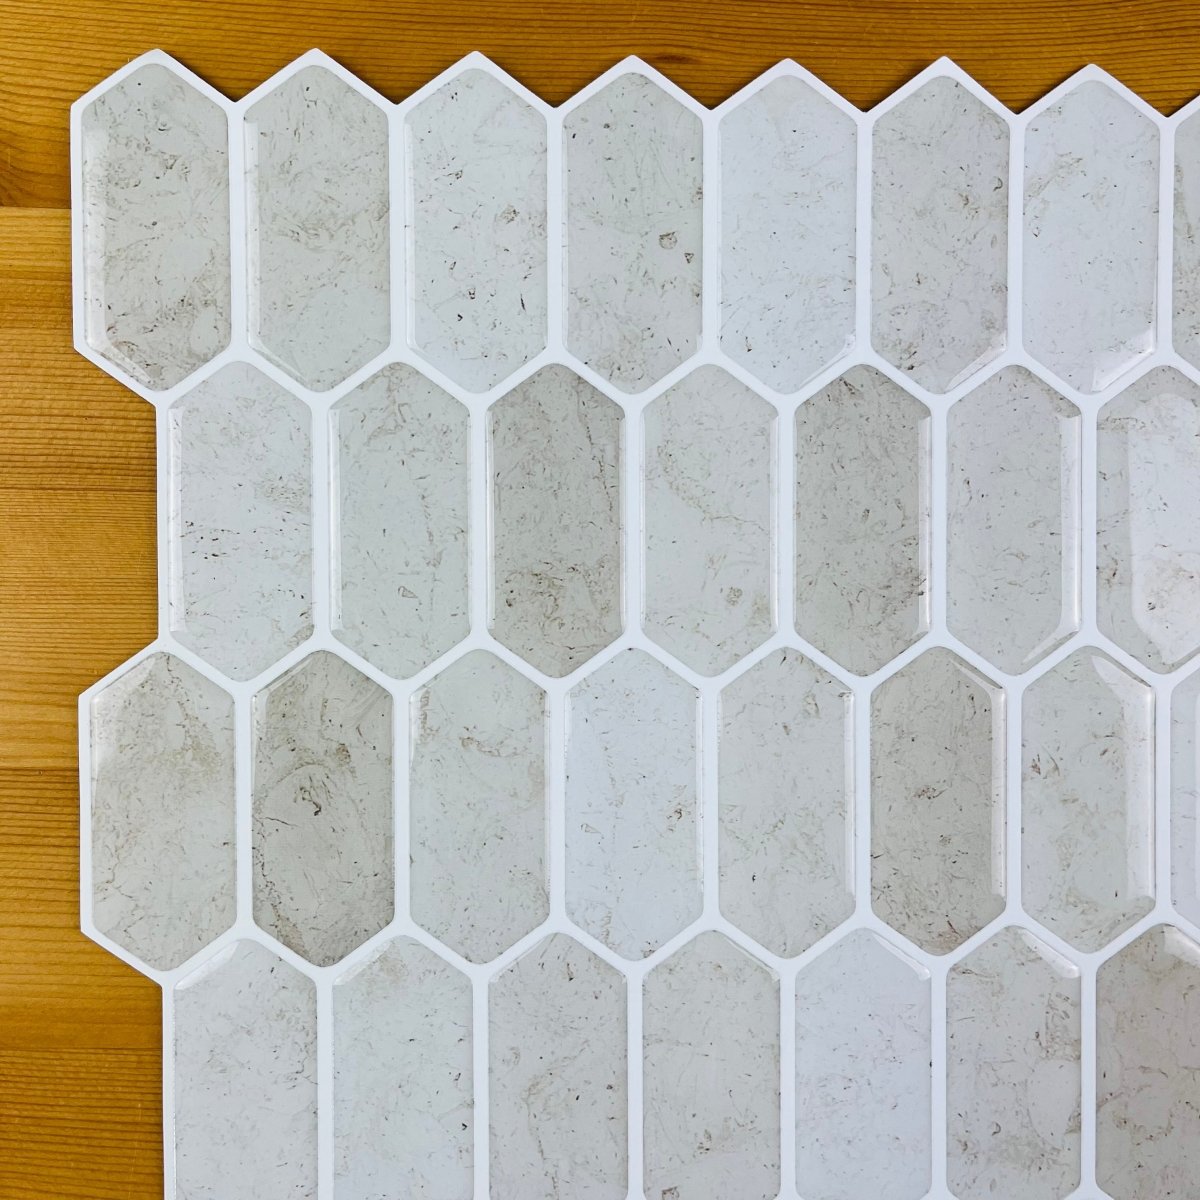 Hexagonal Stick on Tile (Beige/Sand) - Sticky Tiles™ Australia